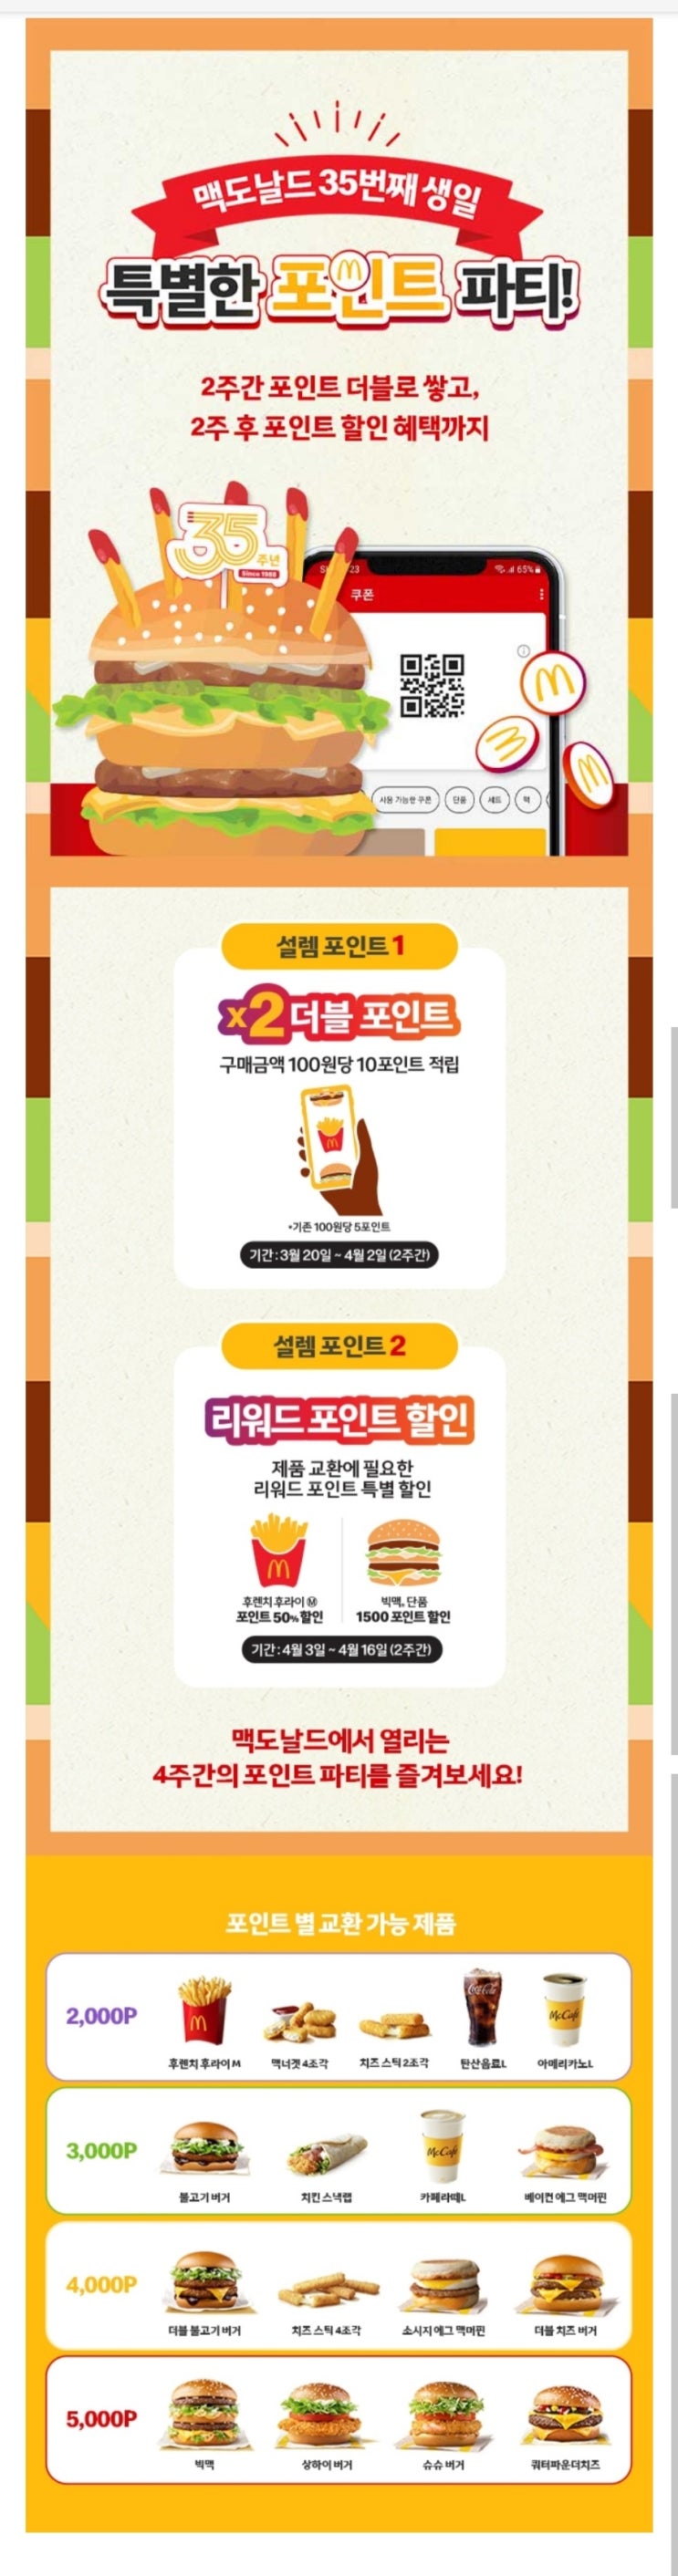 맥도날드 앱 35주년 프로모션 특별한 포인트파티 빅맥할인_23년 4월 16일까지